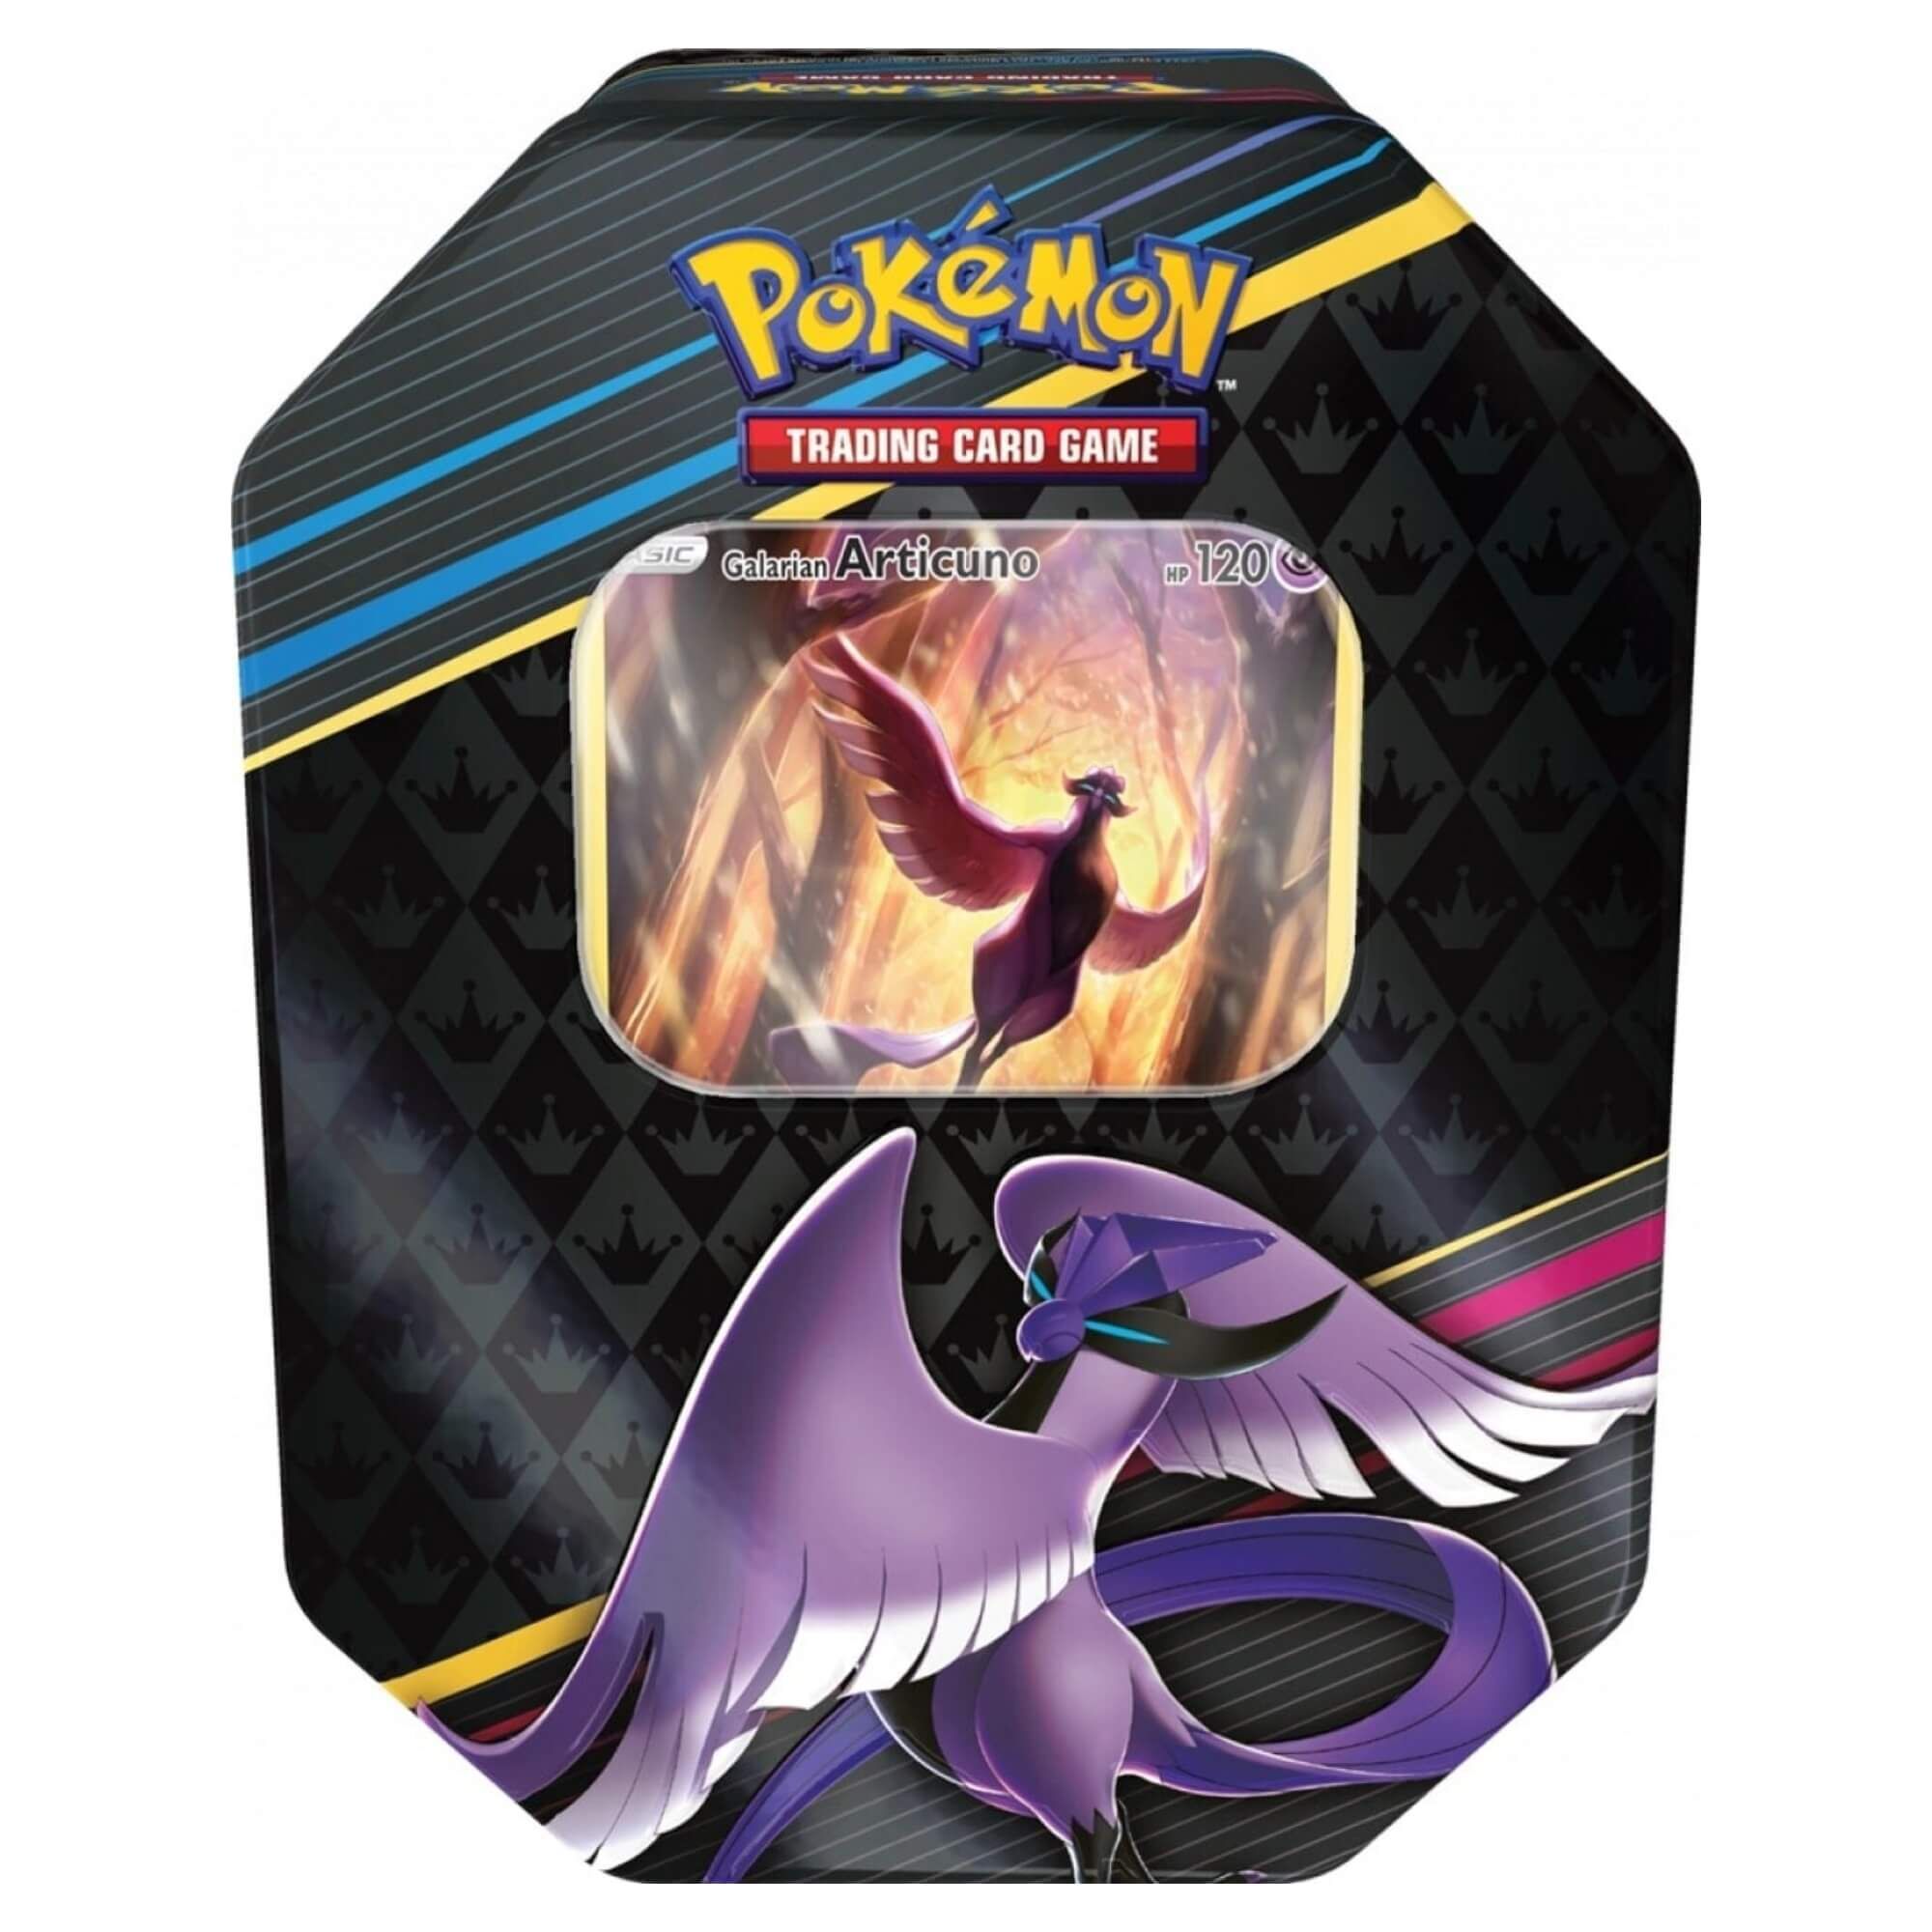 Pokémon Crown Zenith - Galarian Articuno Tin Box (ENG)